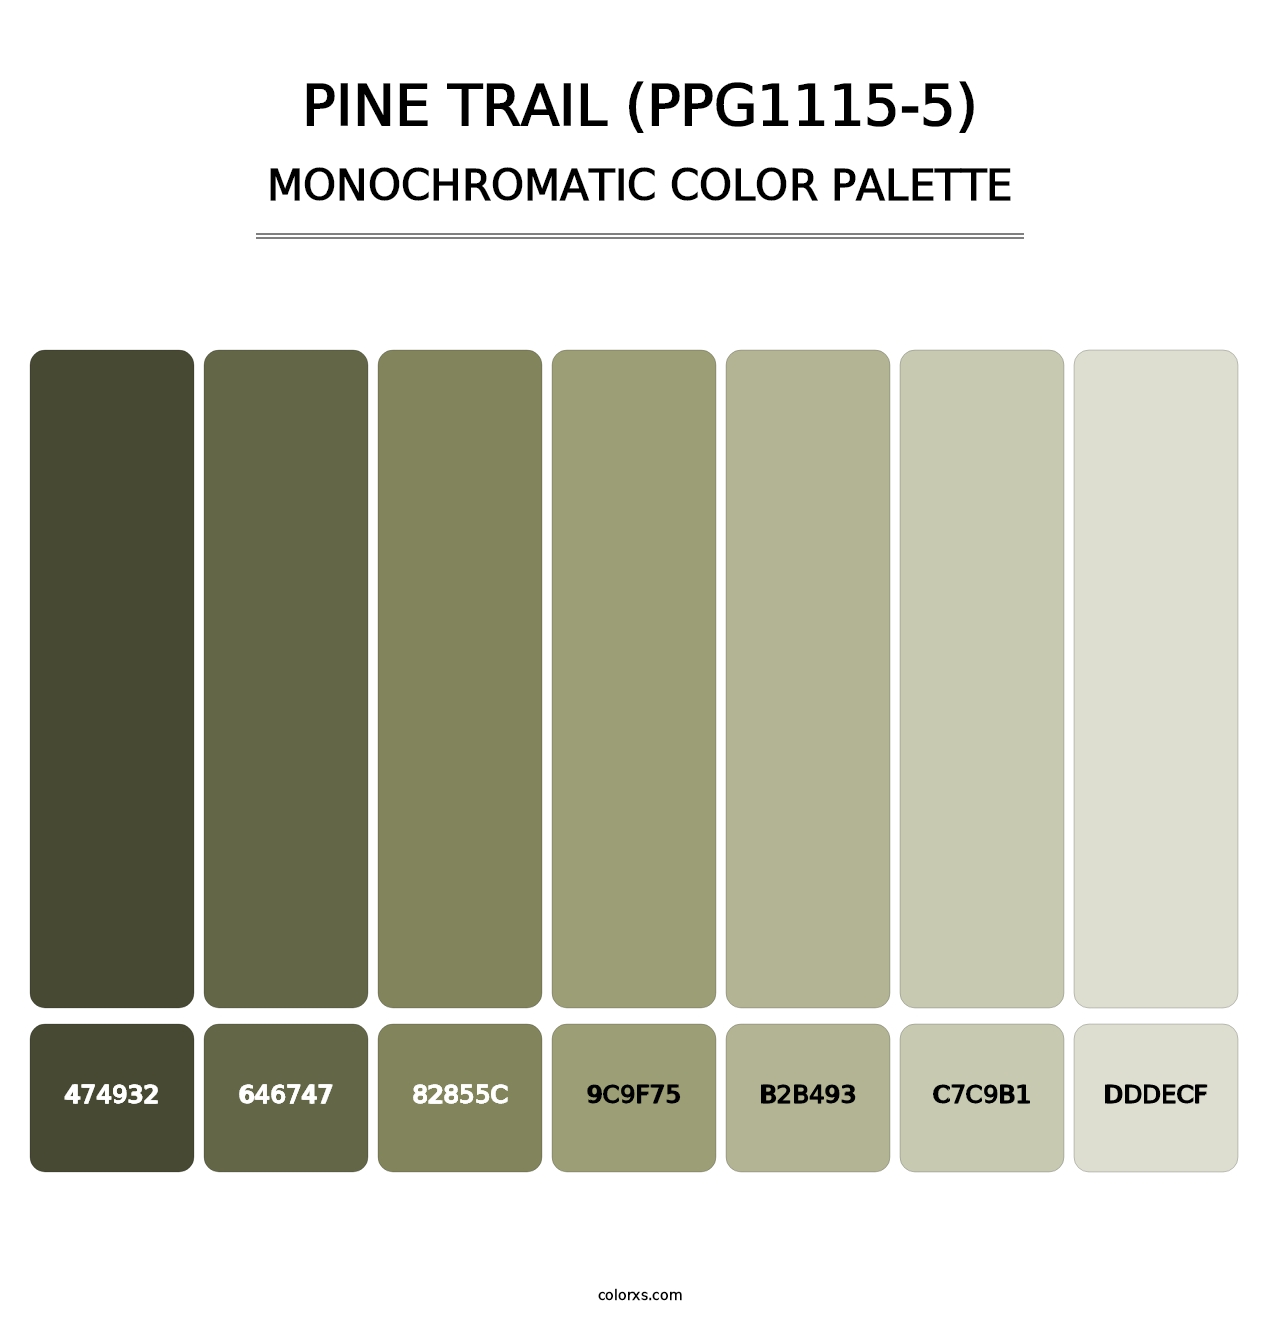 Pine Trail (PPG1115-5) - Monochromatic Color Palette